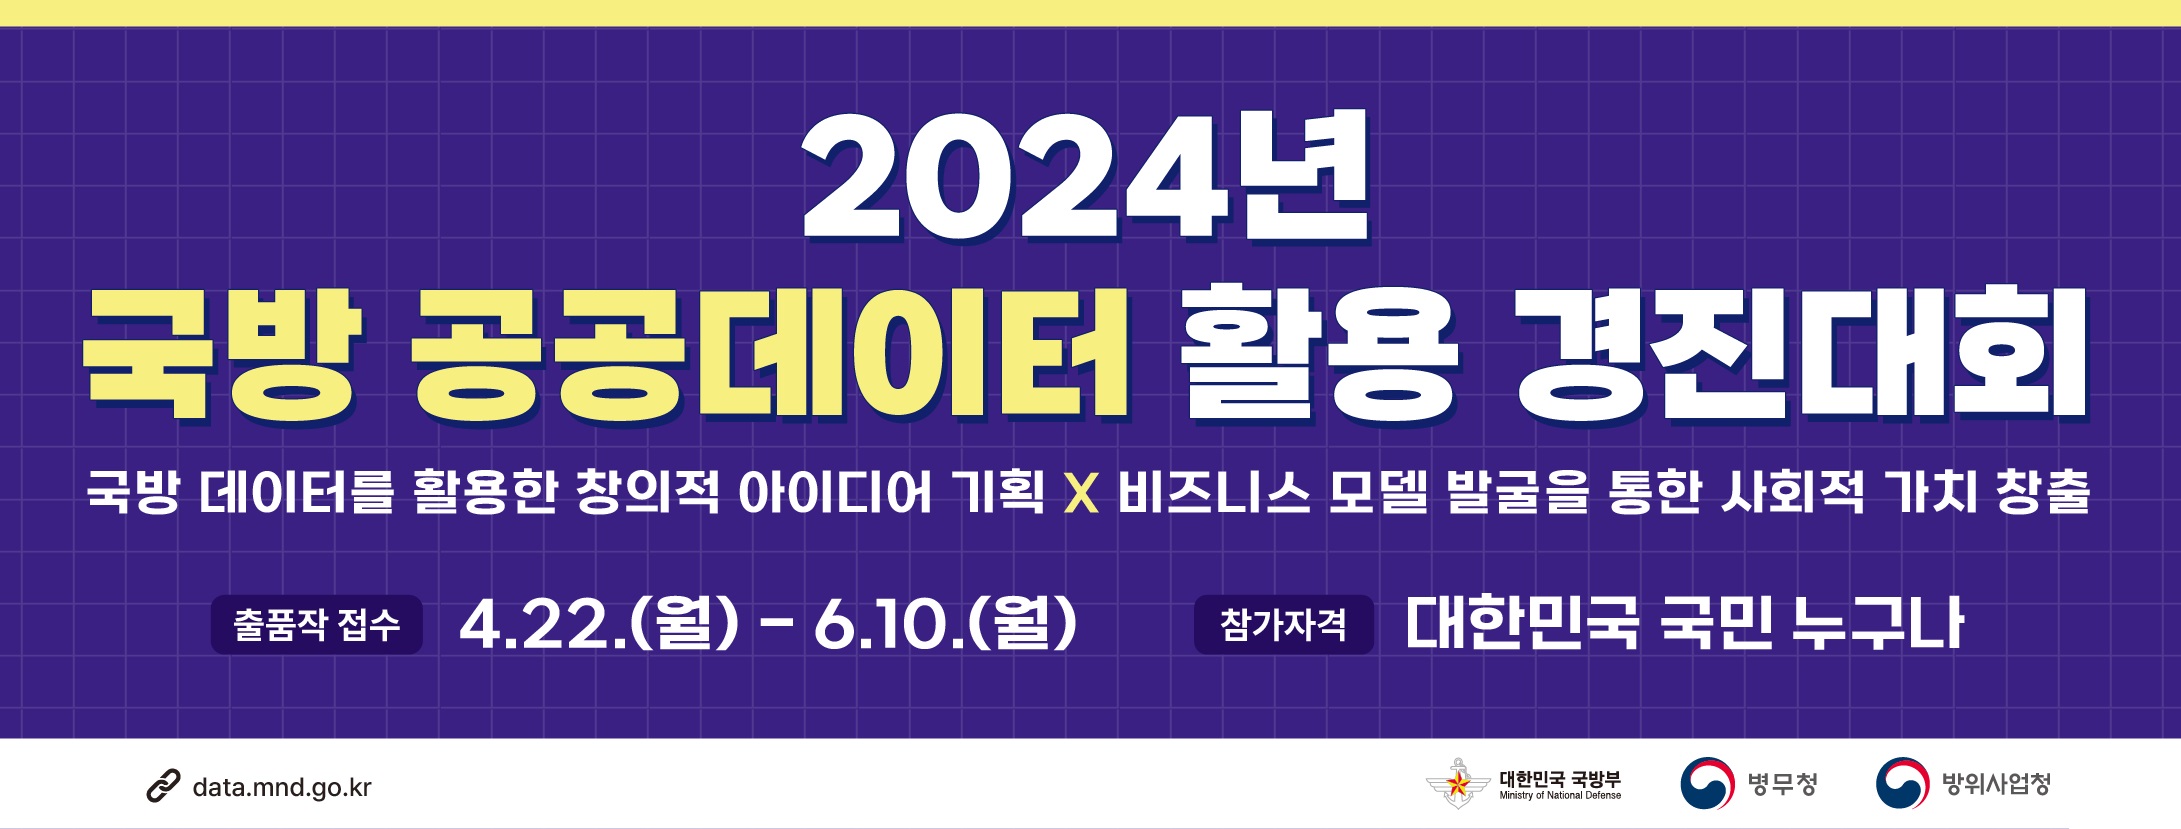 2024년 공공데이터 활용 경진대회 홍보